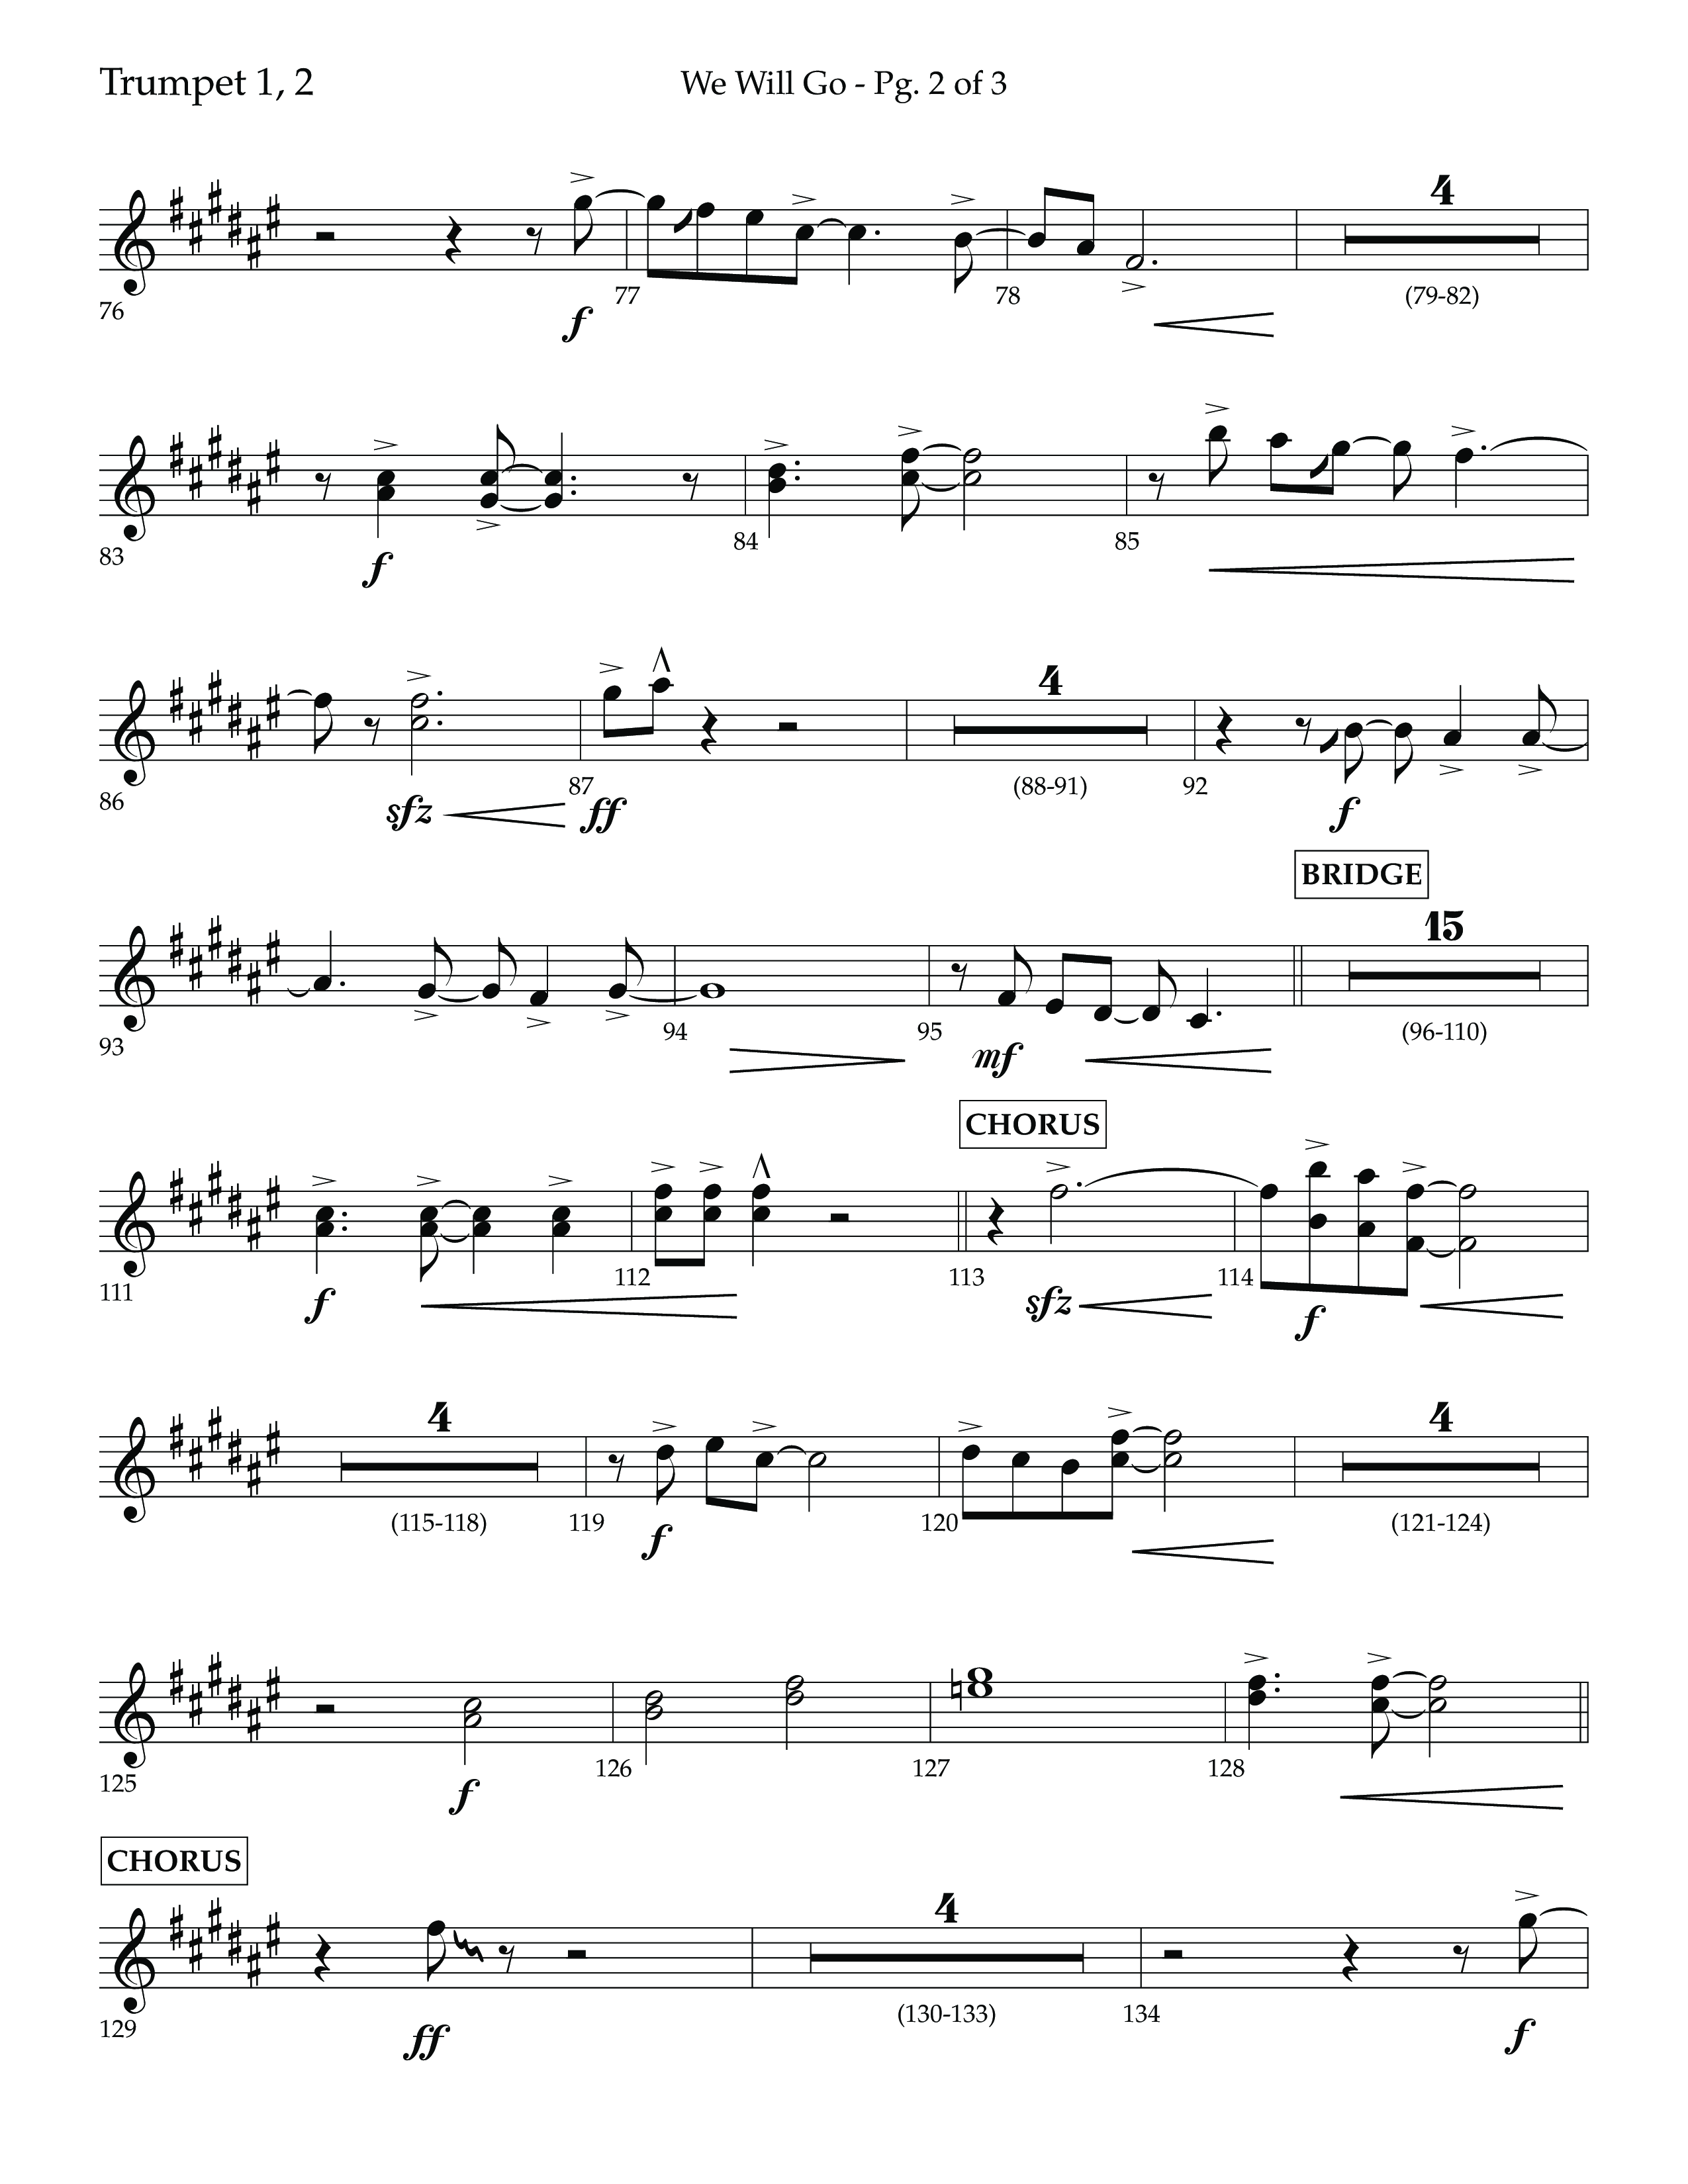 We Will Go (Choral Anthem SATB) Trumpet 1,2 (Lifeway Choral / Arr. Cliff Duren)